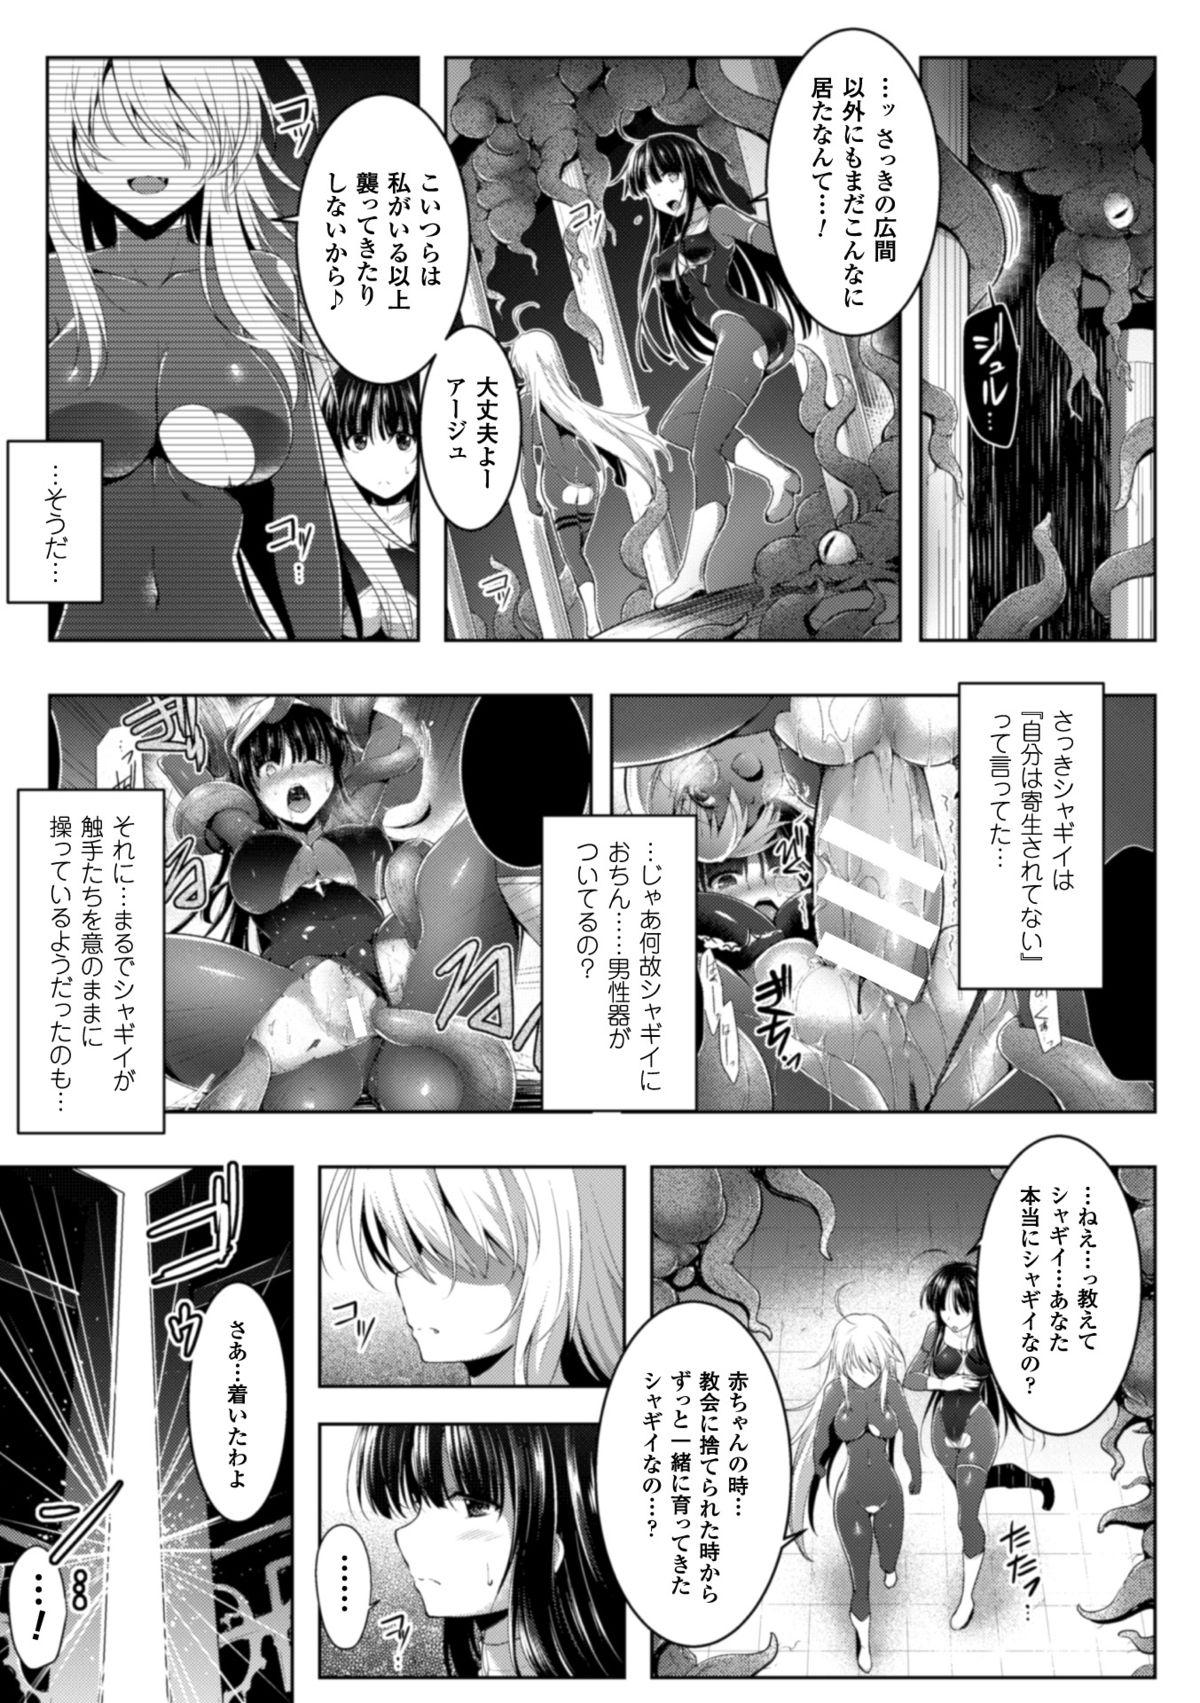 Seigi no Heroine Kangoku File Vol. 1 54